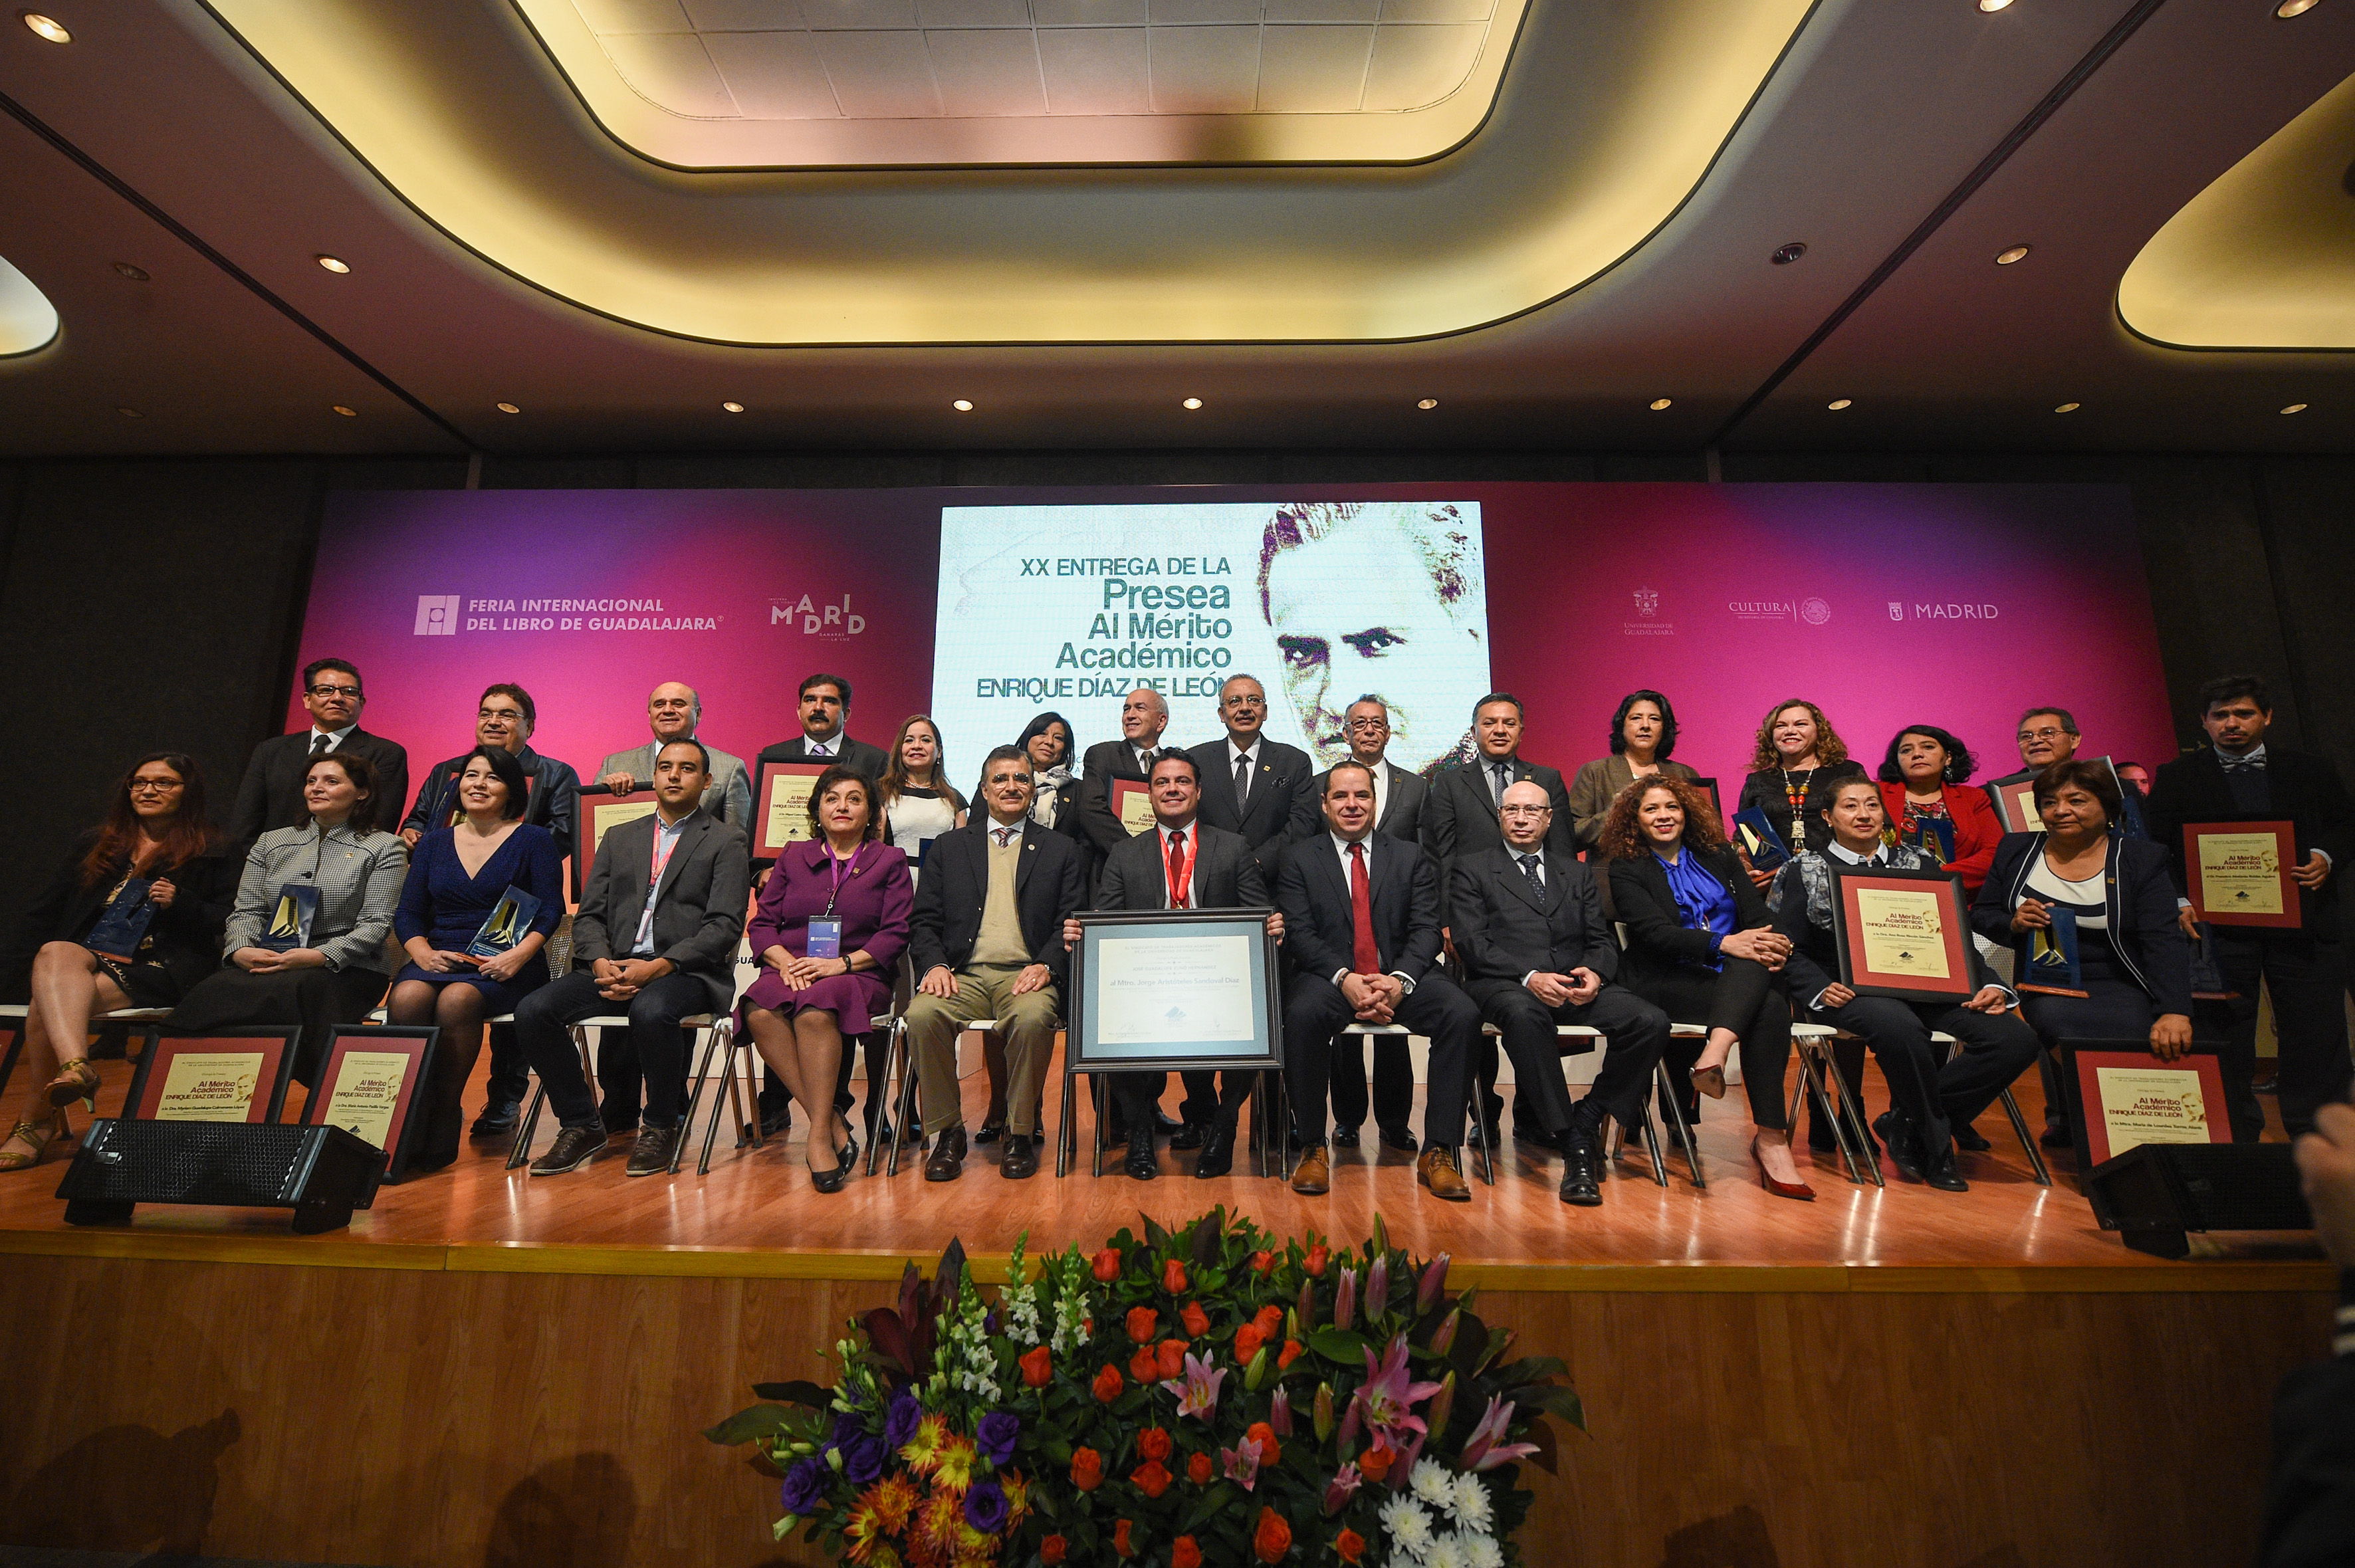 21 docentes de la UdeG fueron reconocidos con la Presea "Enrique Díaz de León"